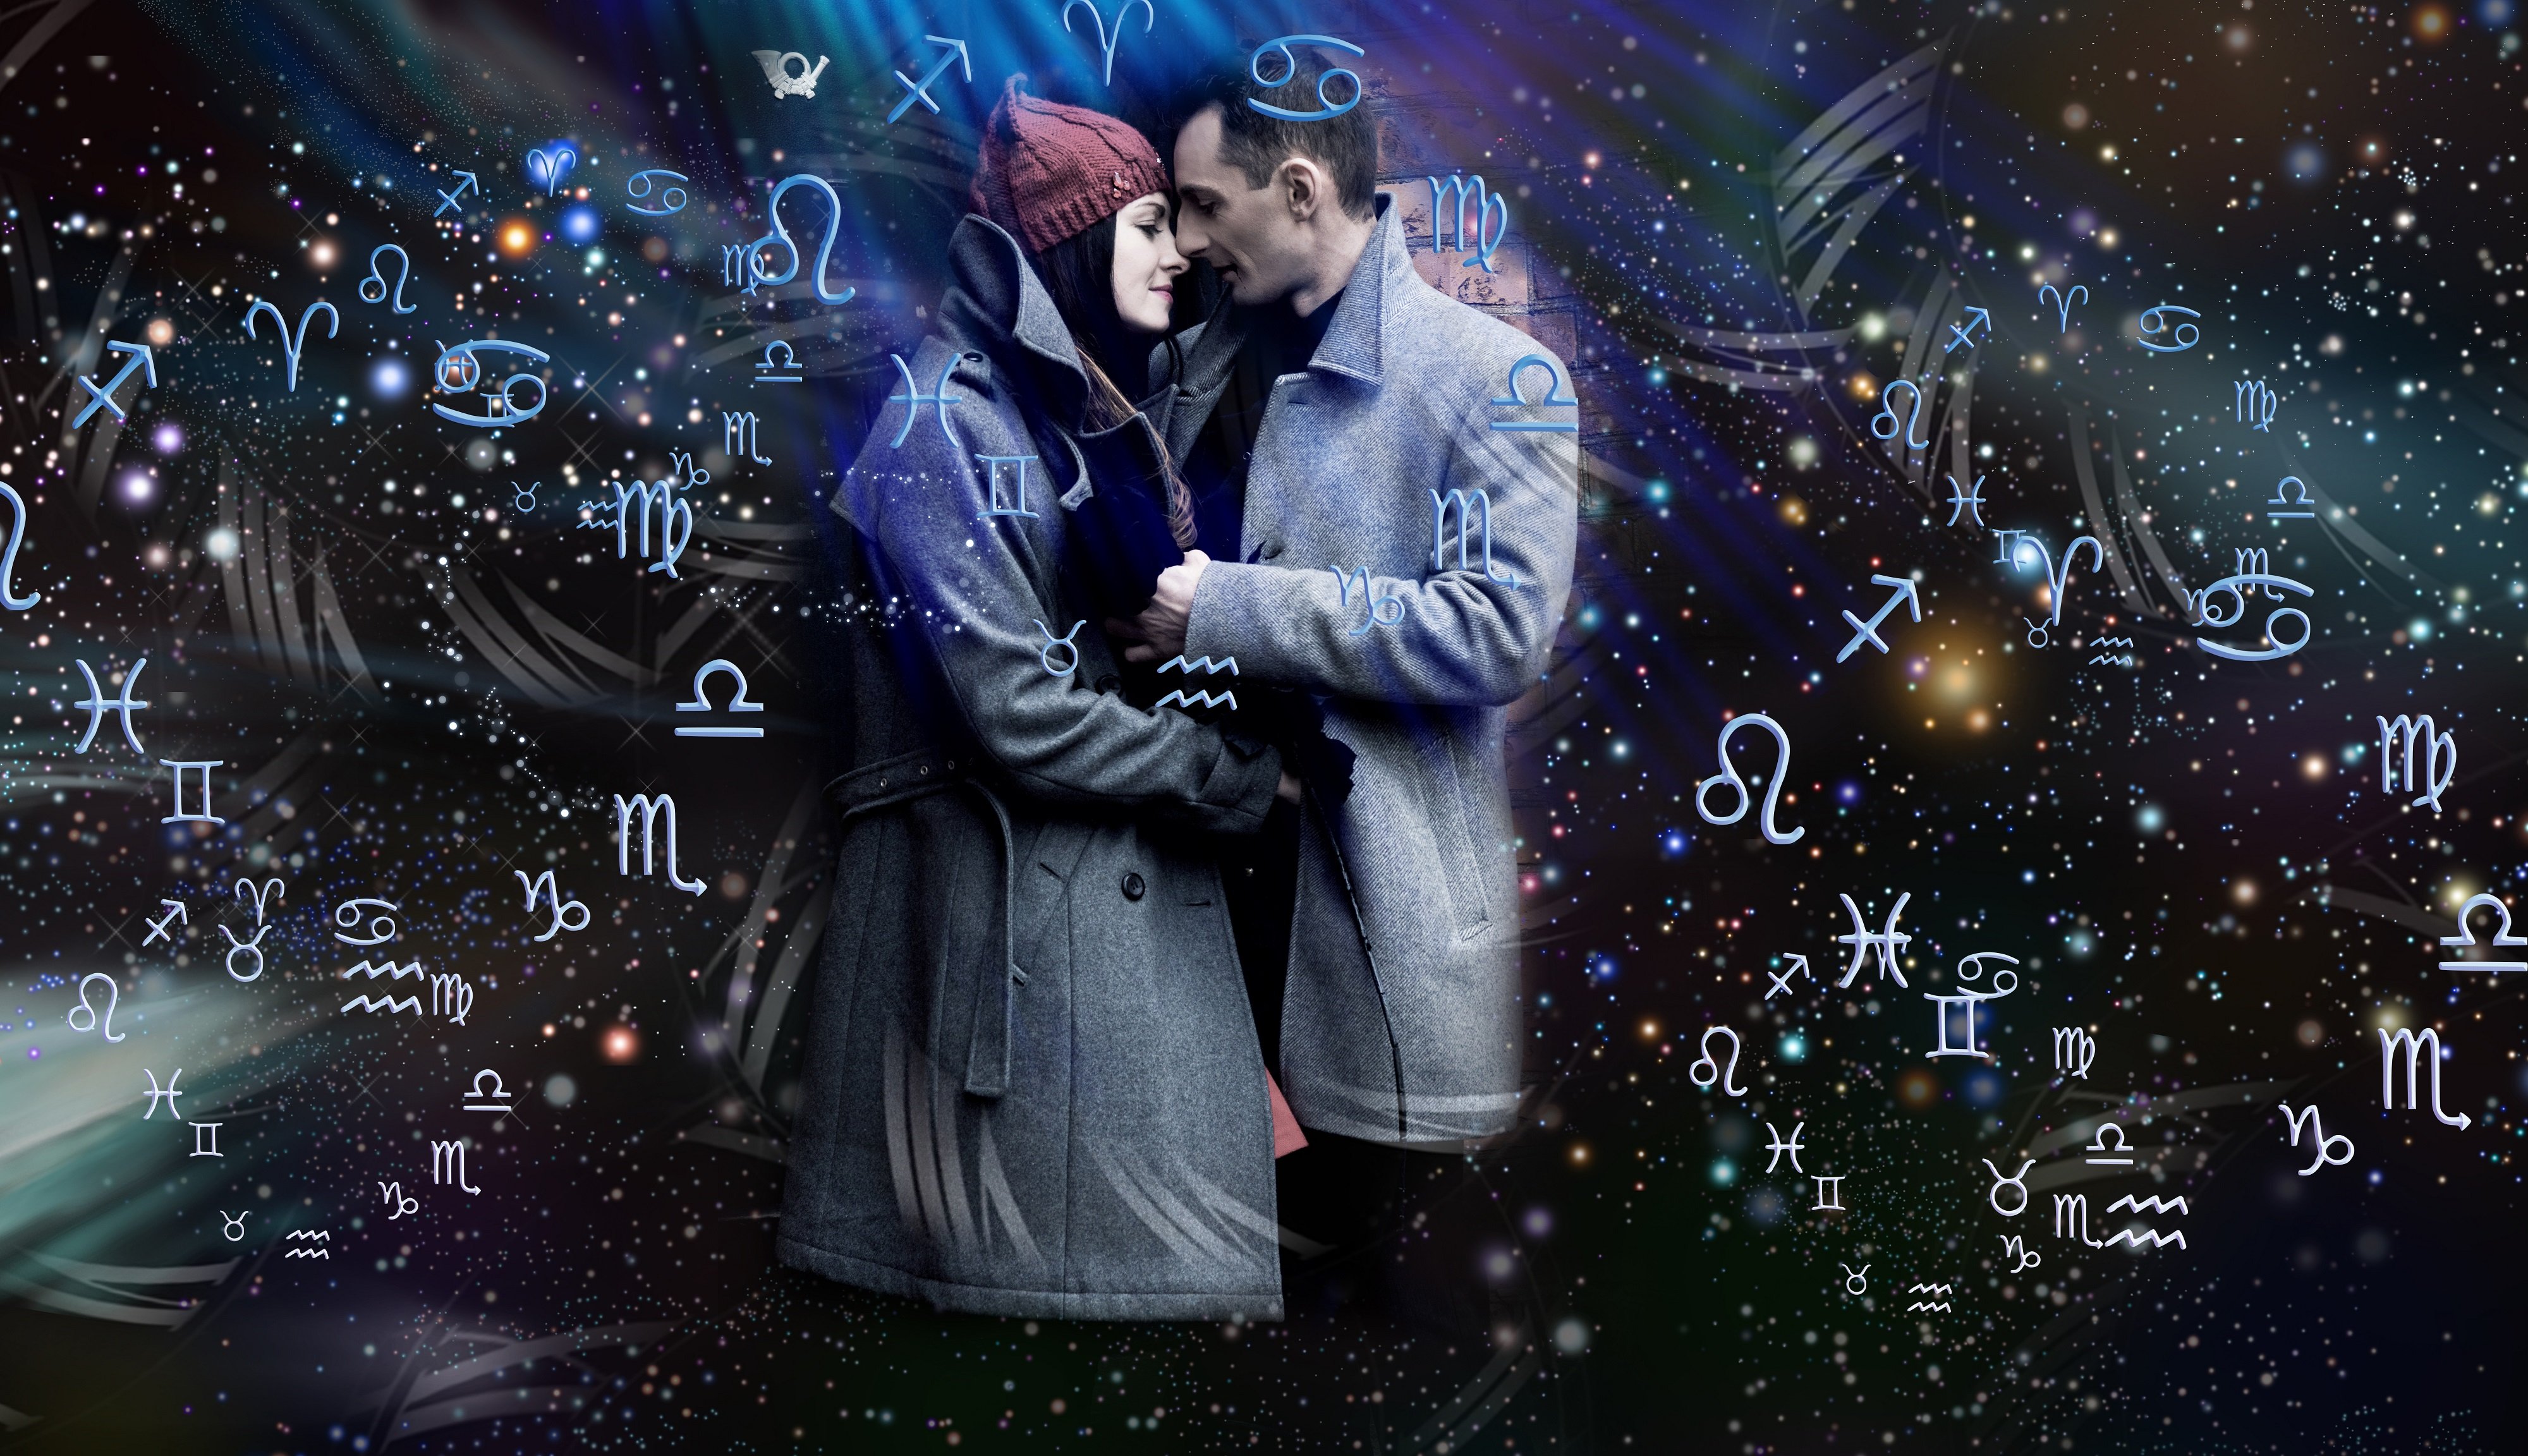 Amor y relaciones entre los signos del zodíaco || Fuente: Shutterstock